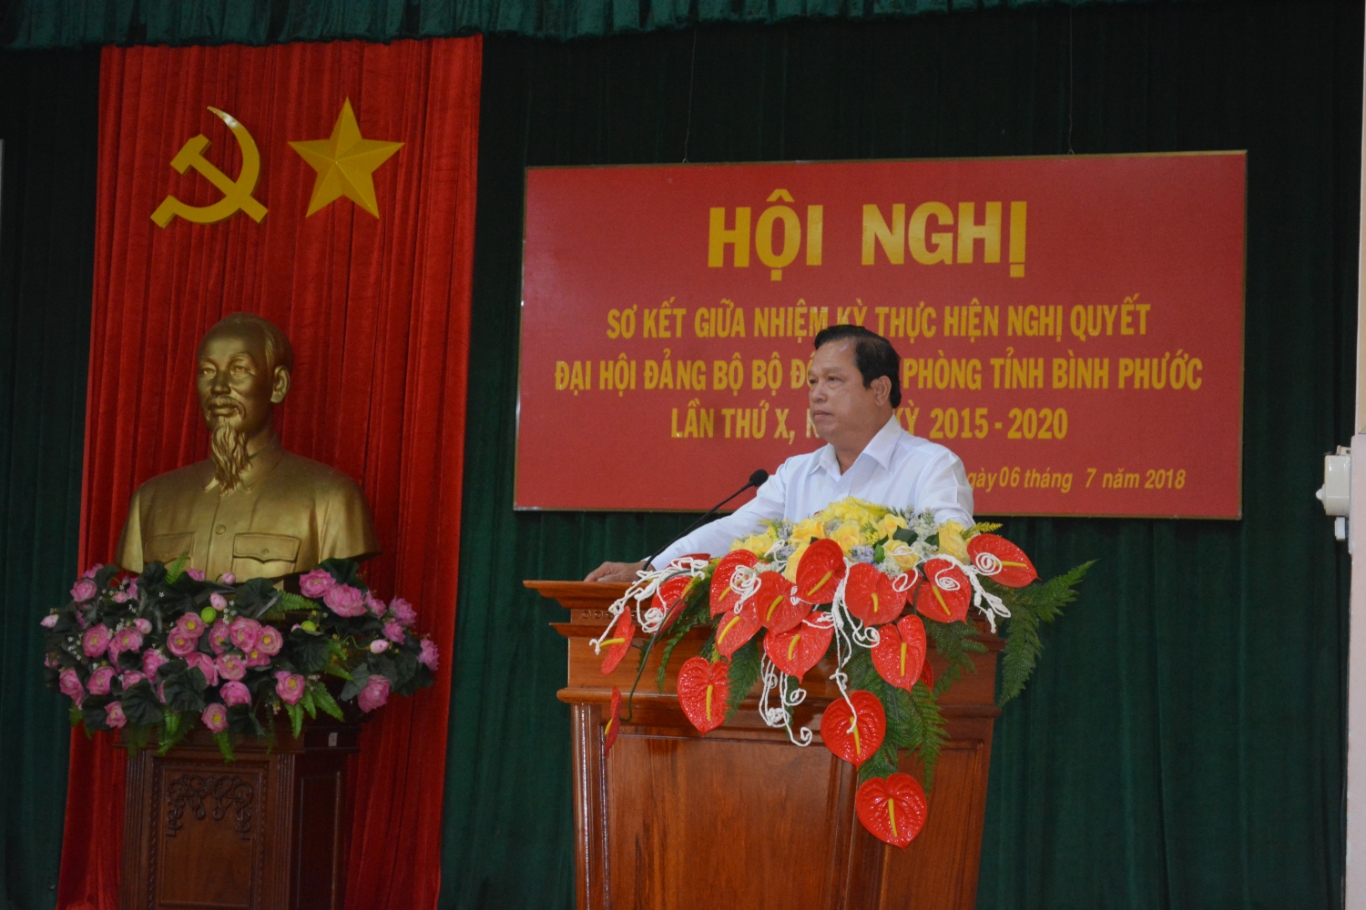 Đồng chí Nguyễn Văn Trăm, Phó bí thư Tỉnh ủy, Chủ tịch UBND tỉnh phát biểu chỉ đạo tại Hội nghị